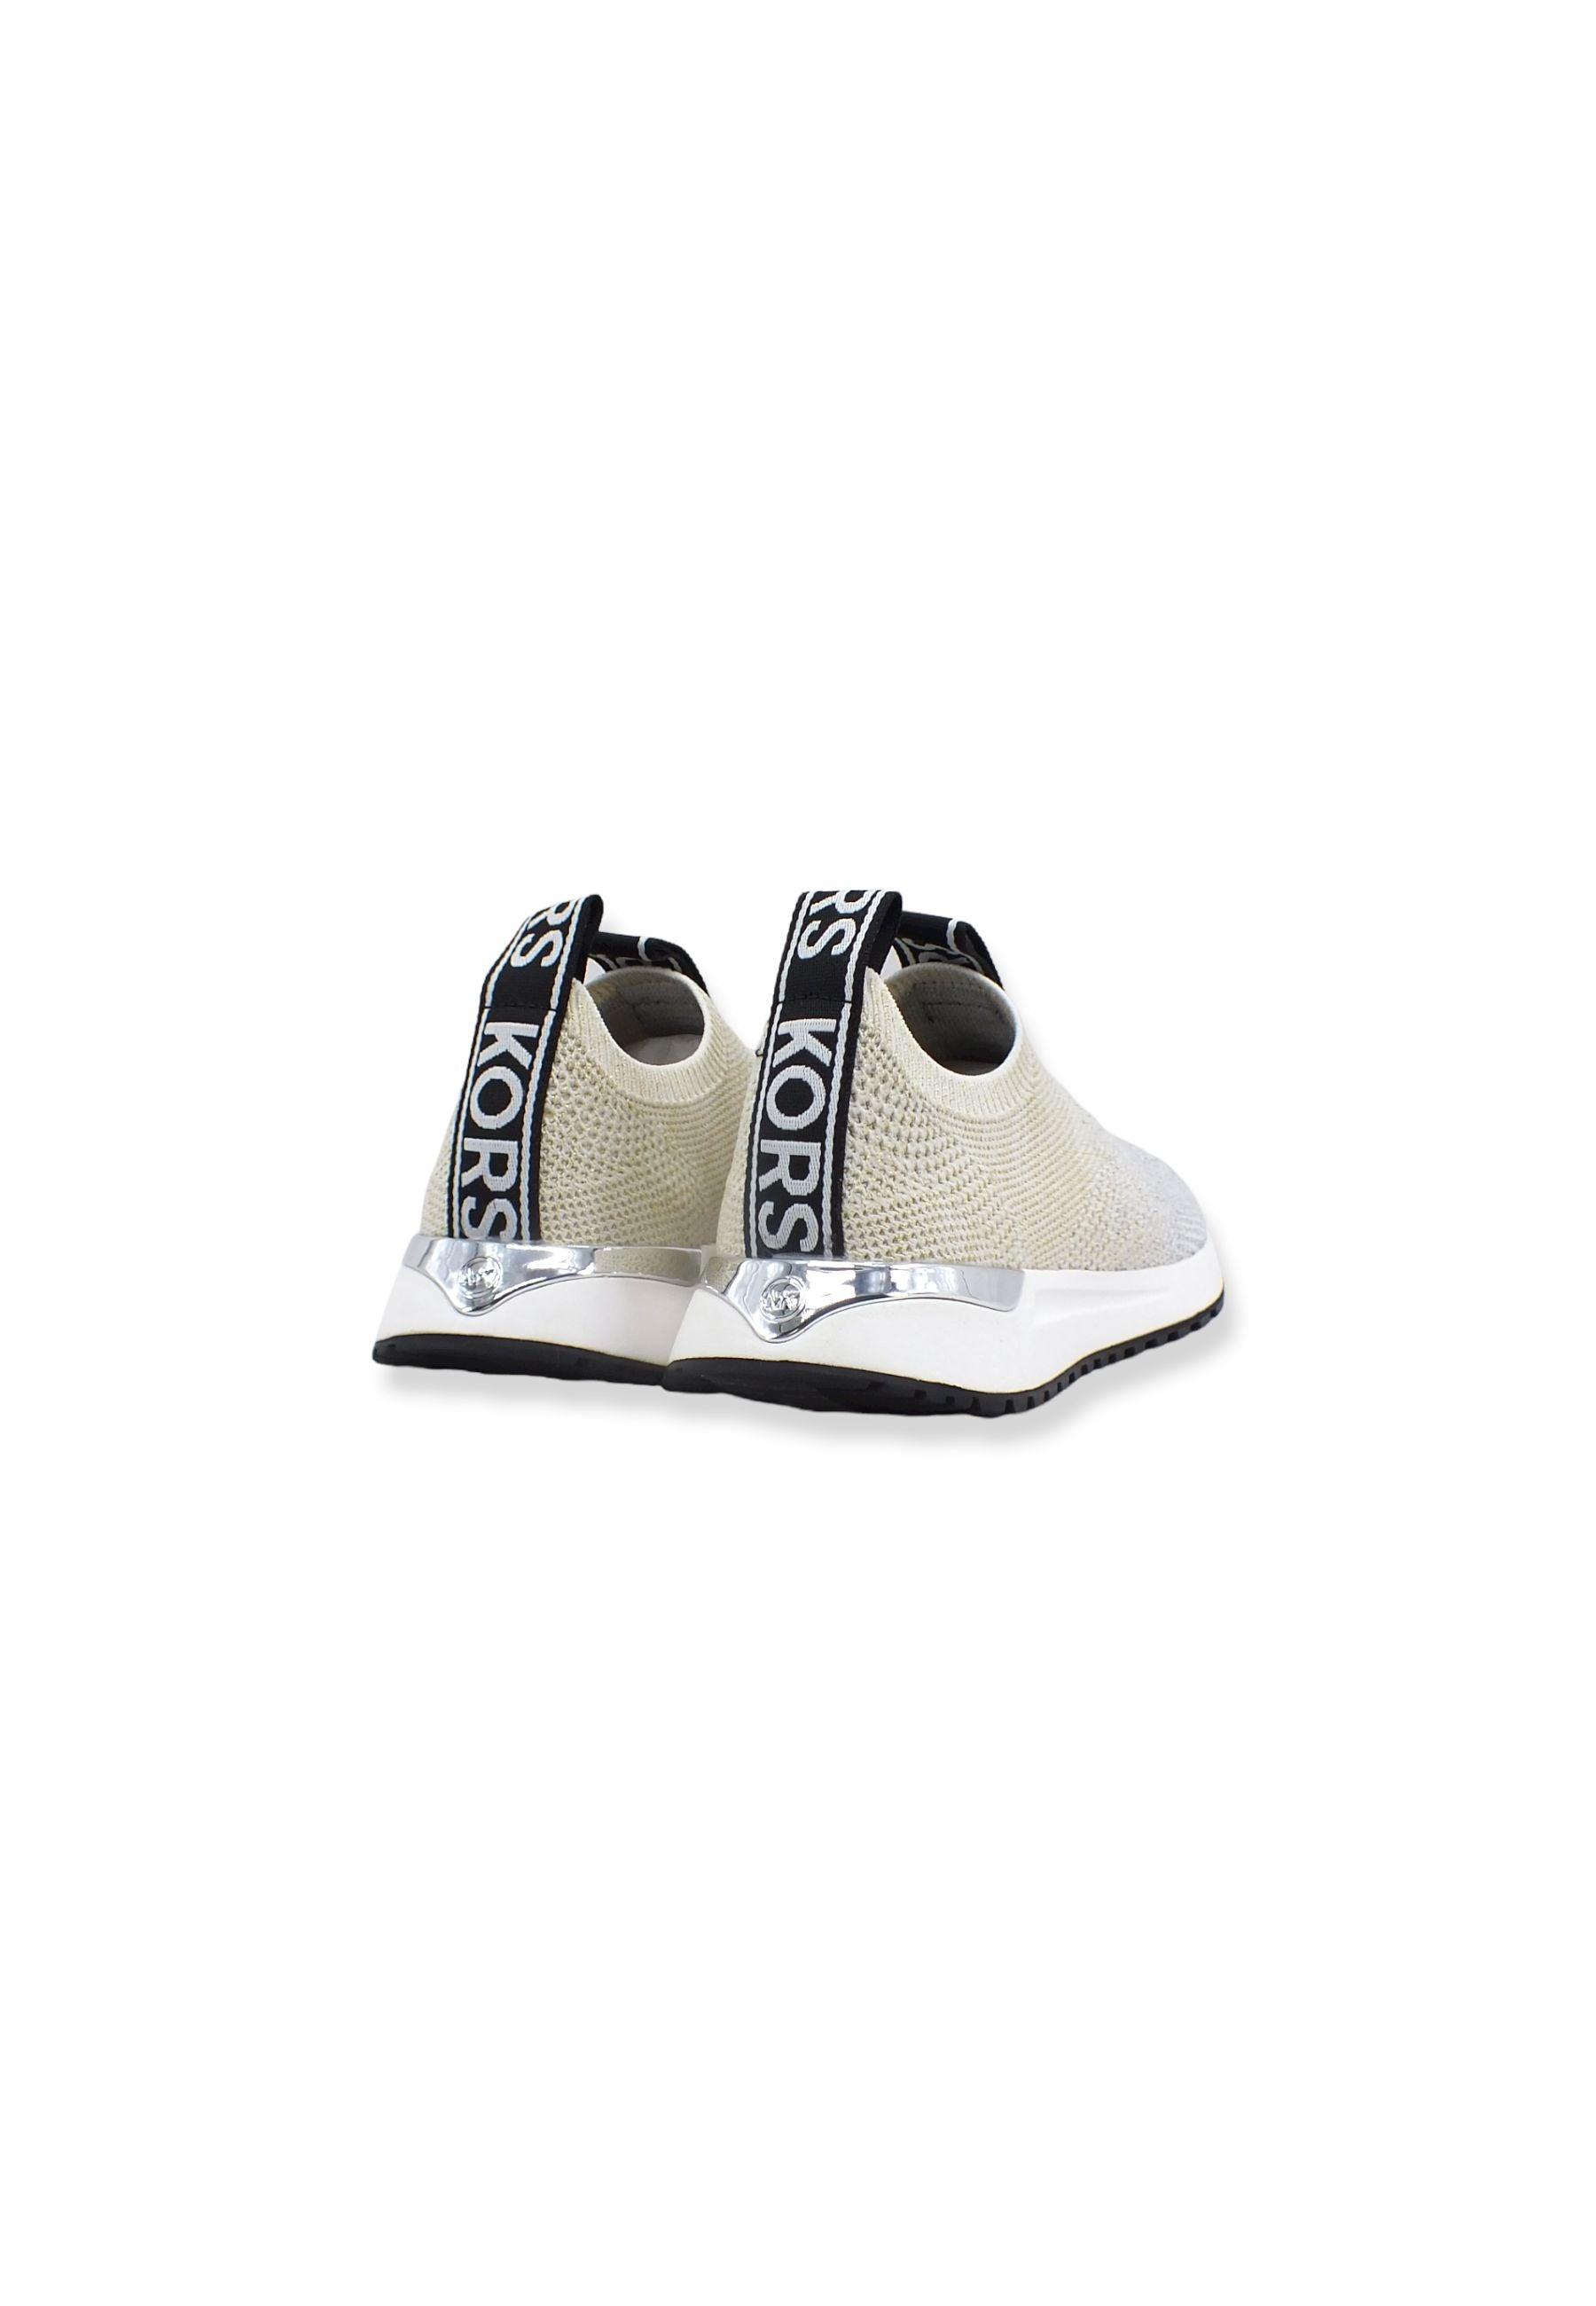 MICHAEL KORS Bodie Slip On Sneaker Donna Silver PlGold 43T2BDFS1M - Sandrini Calzature e Abbigliamento